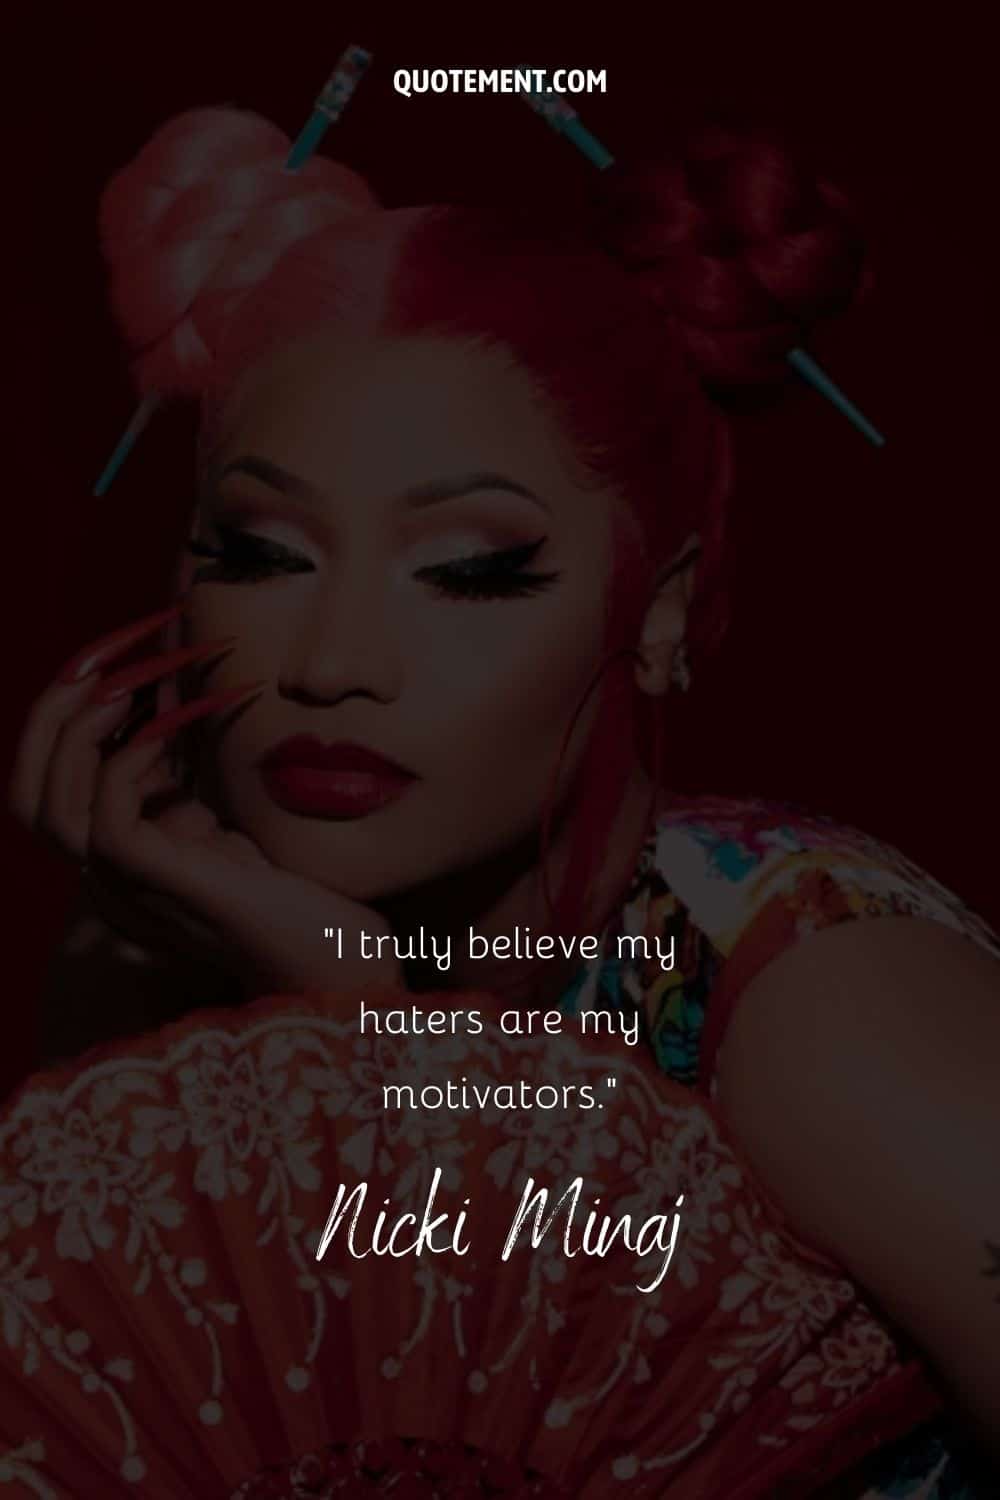 Cita motivadora de Nicki Minaj sobre los haters, y su foto de fondo